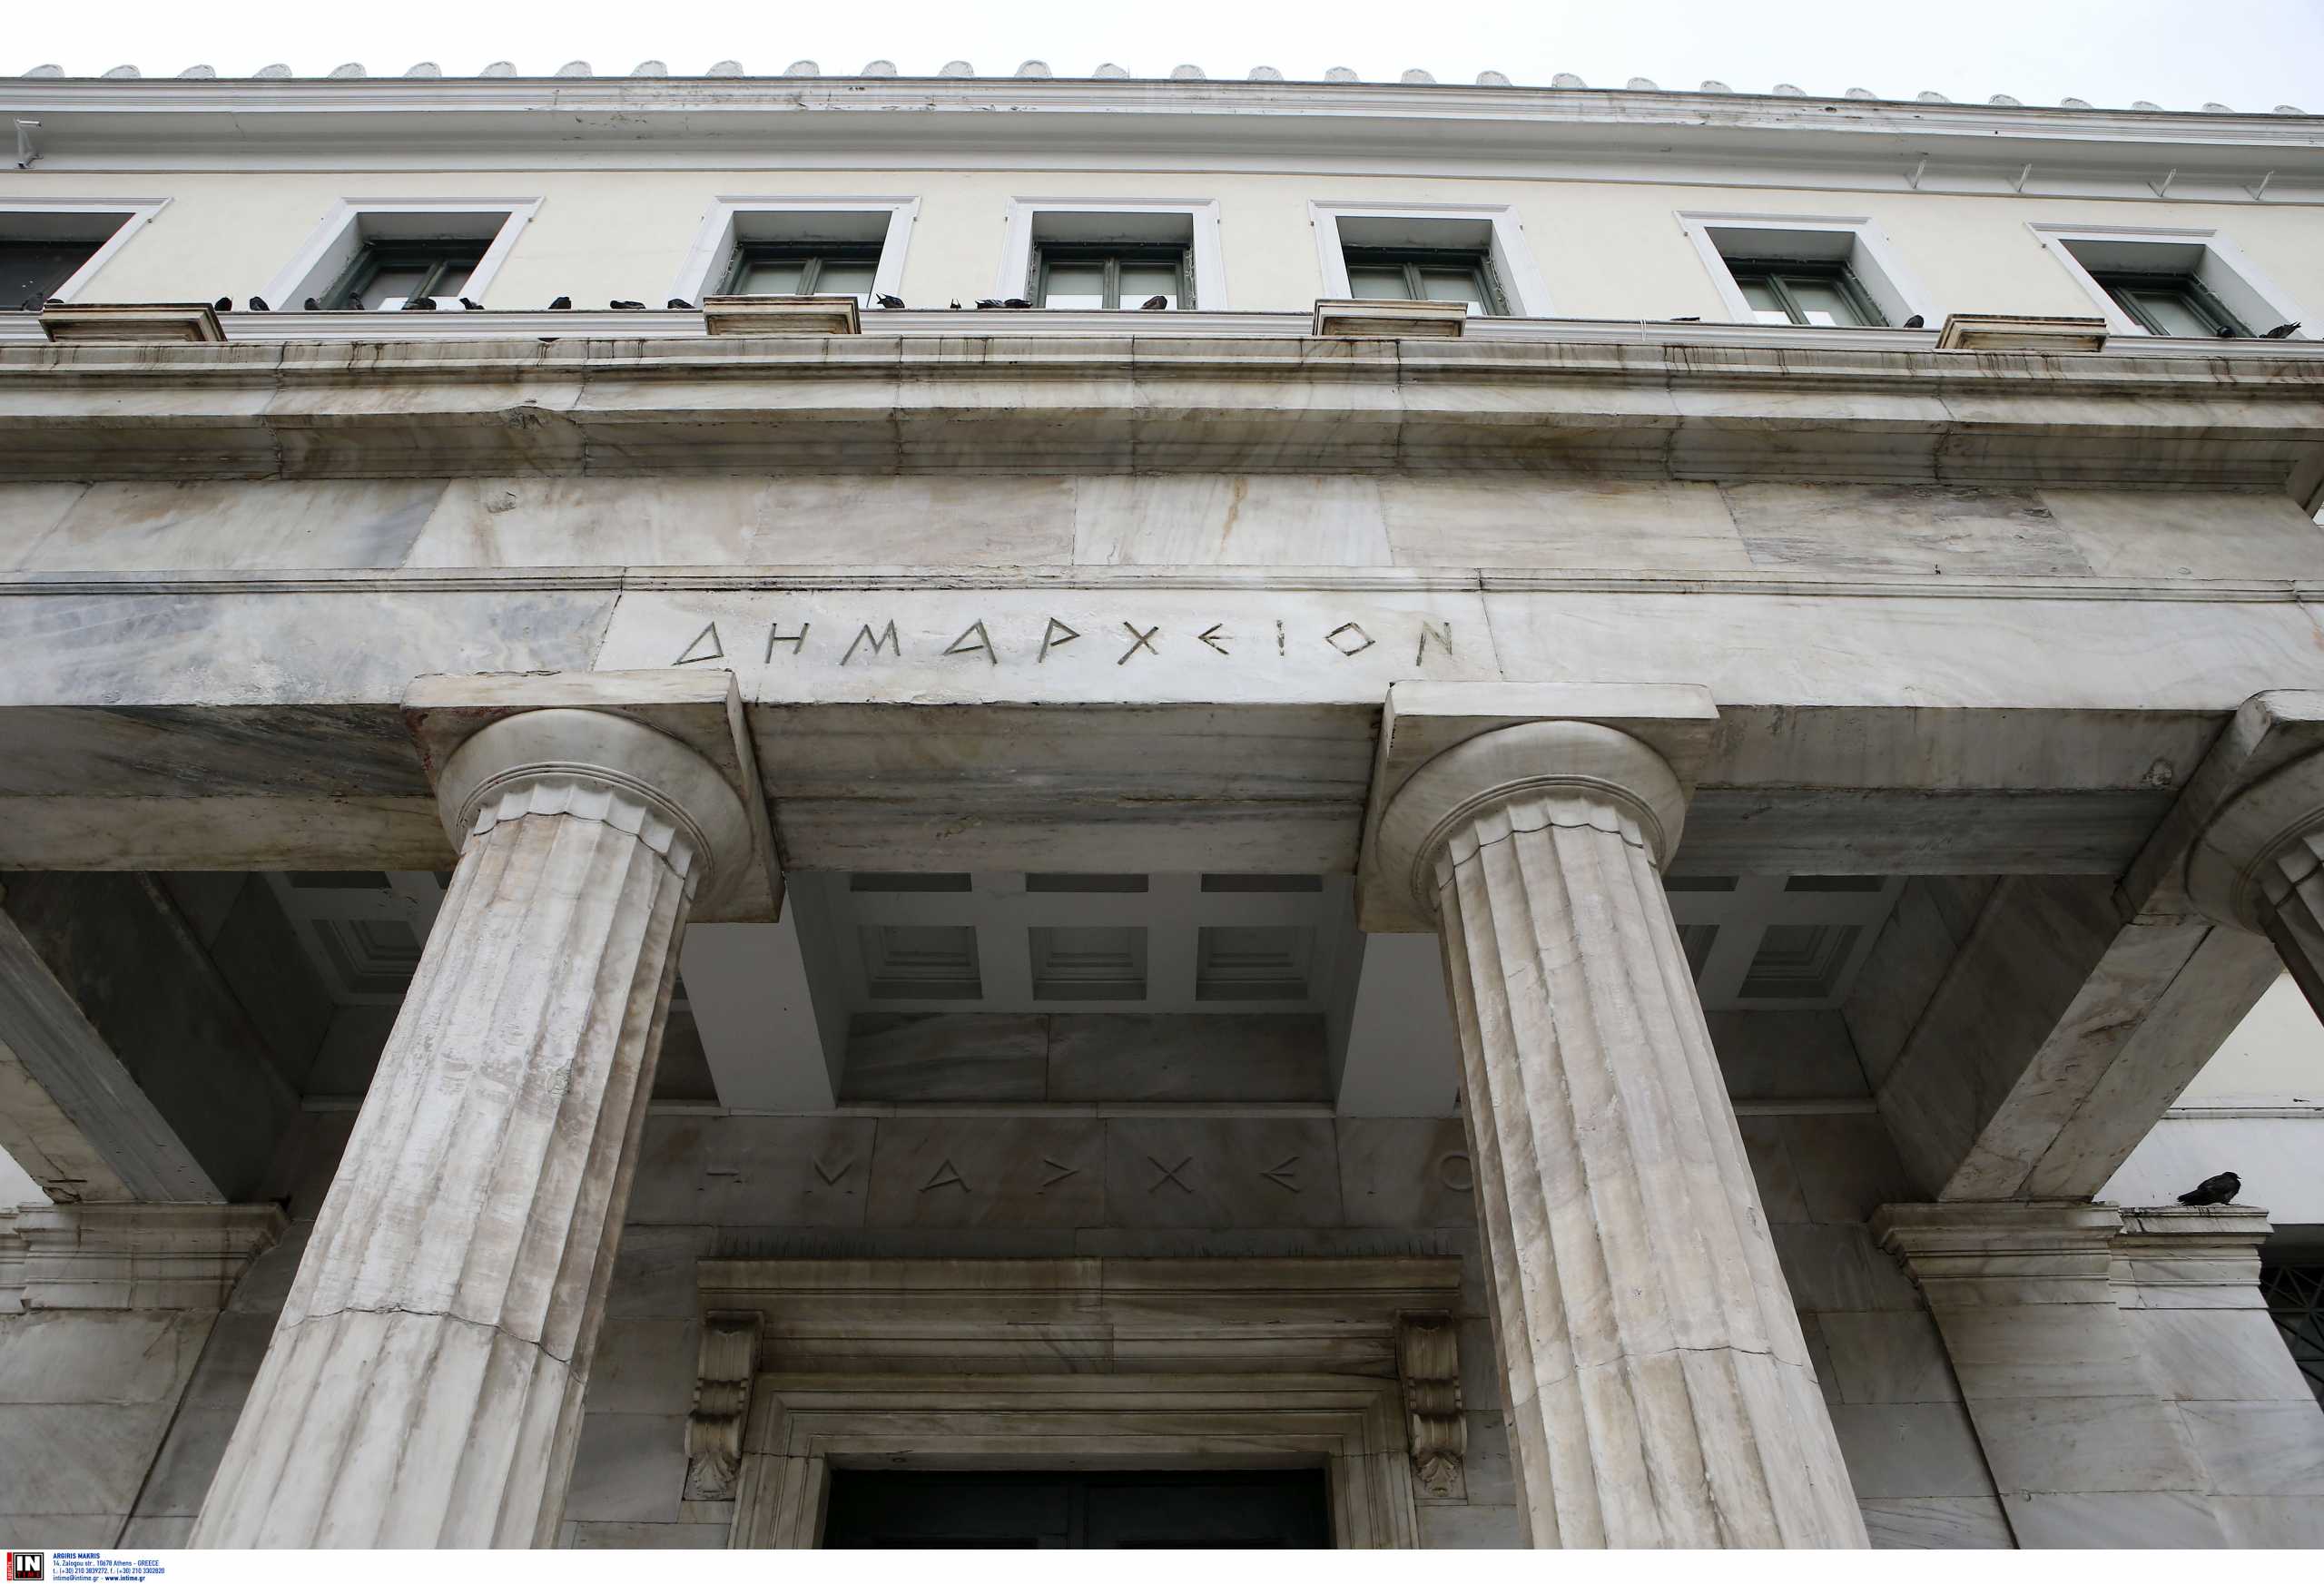 Ο Δήμος Αθηναίων έκανε μήνυση σε εταιρεία ρεύματος για μεγάλες χρεώσεις στα δημοτικά τέλη